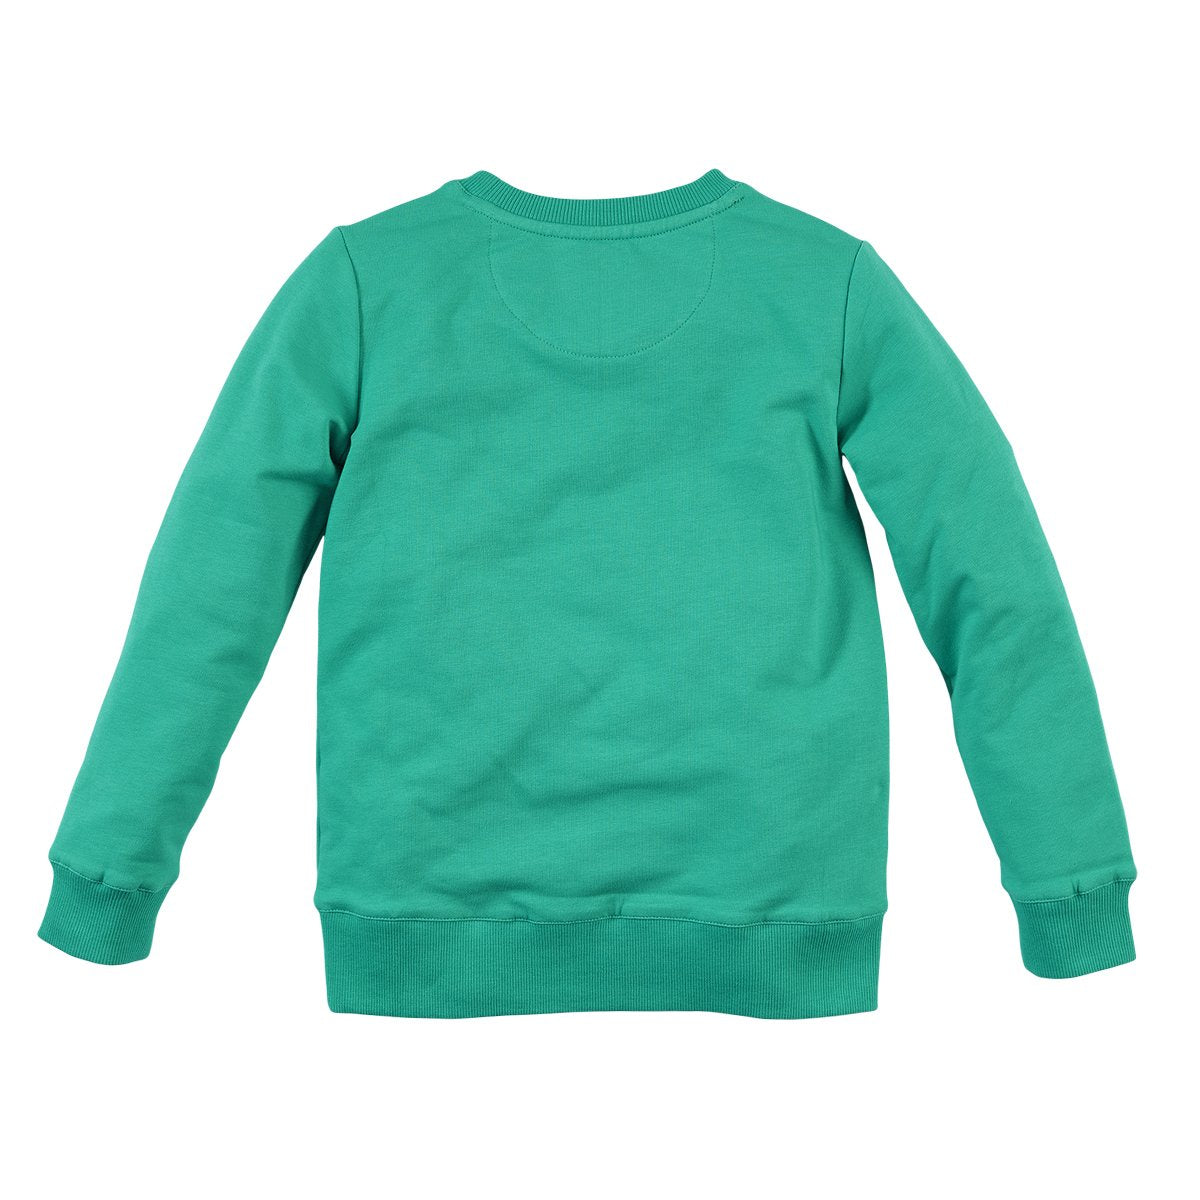 Jongens Sweater Faber van Z8 in de kleur Crazy calypso in maat 140/146.